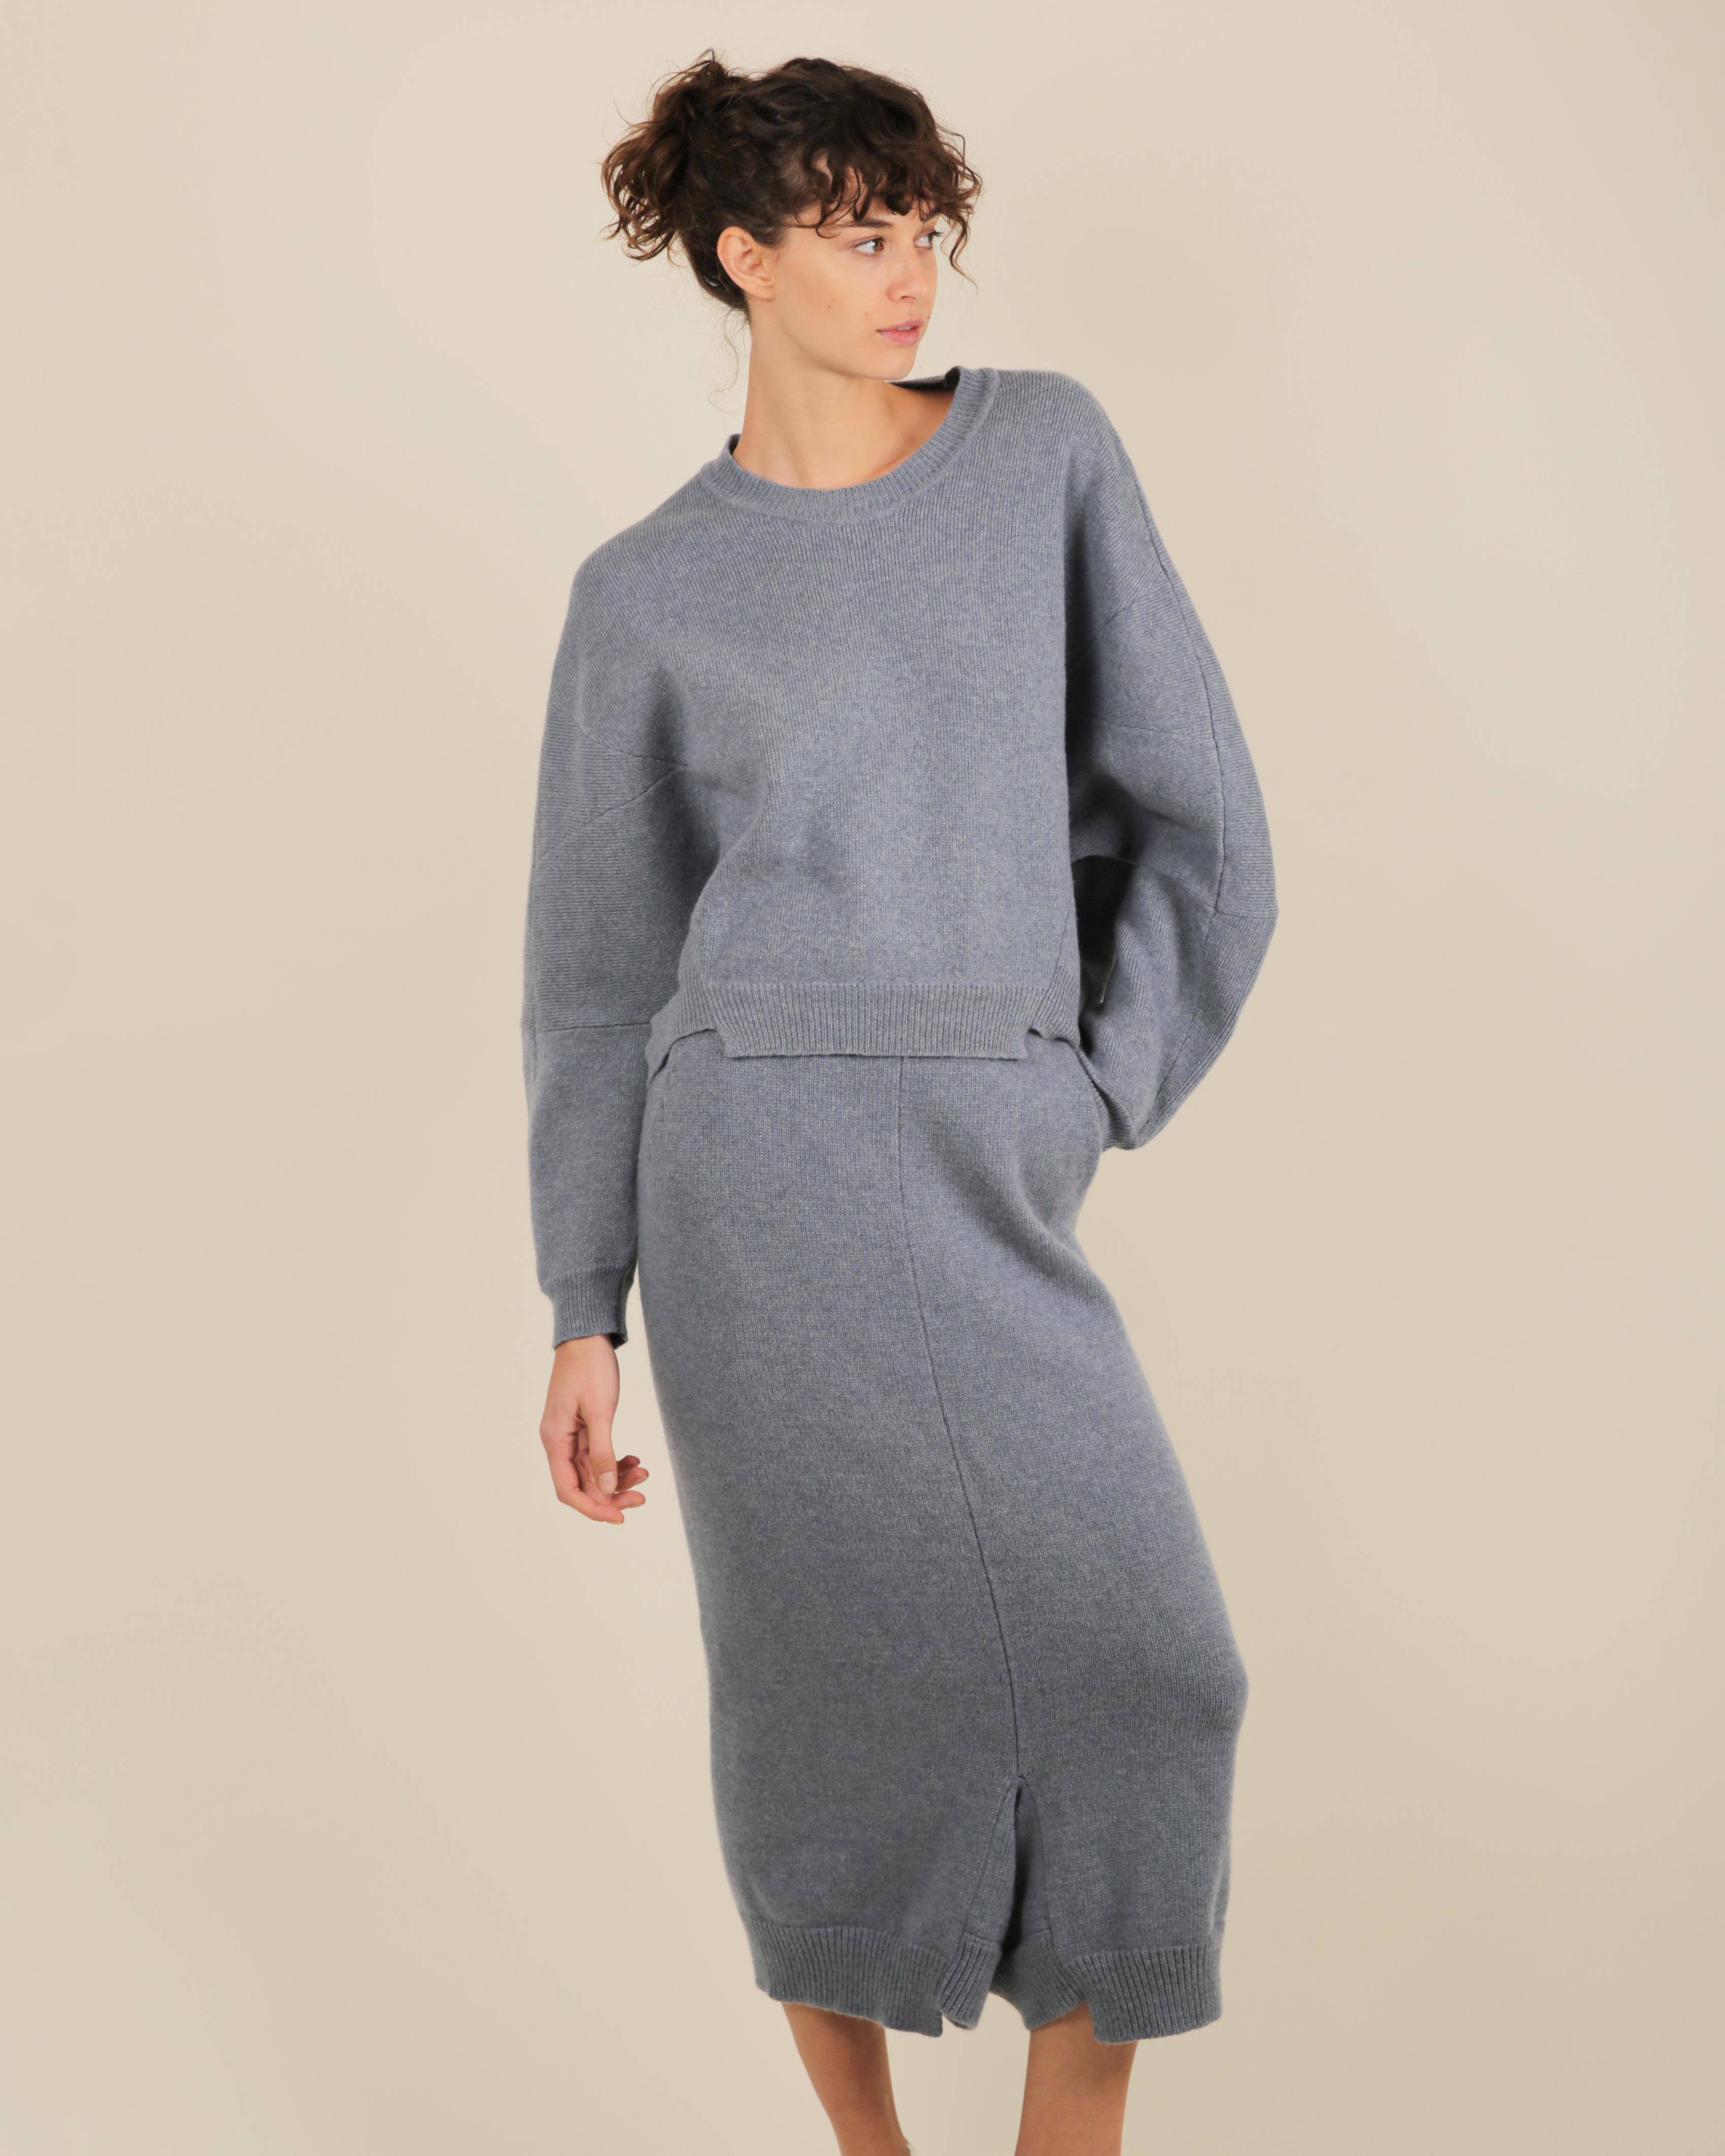 Stella McCartney Fall18 blue oversized wool alpaca matching sweater dress pants For Sale 4